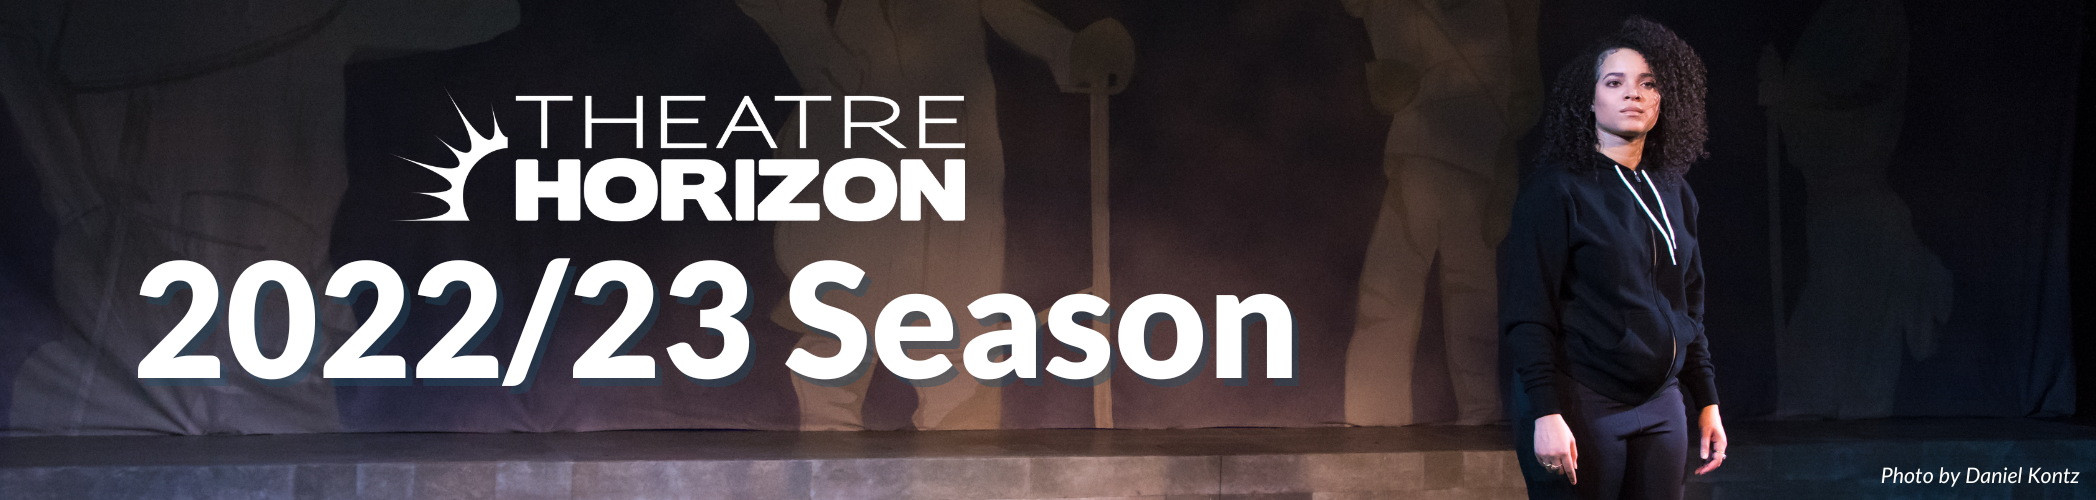 Theatre Horizon 2022/23 Season